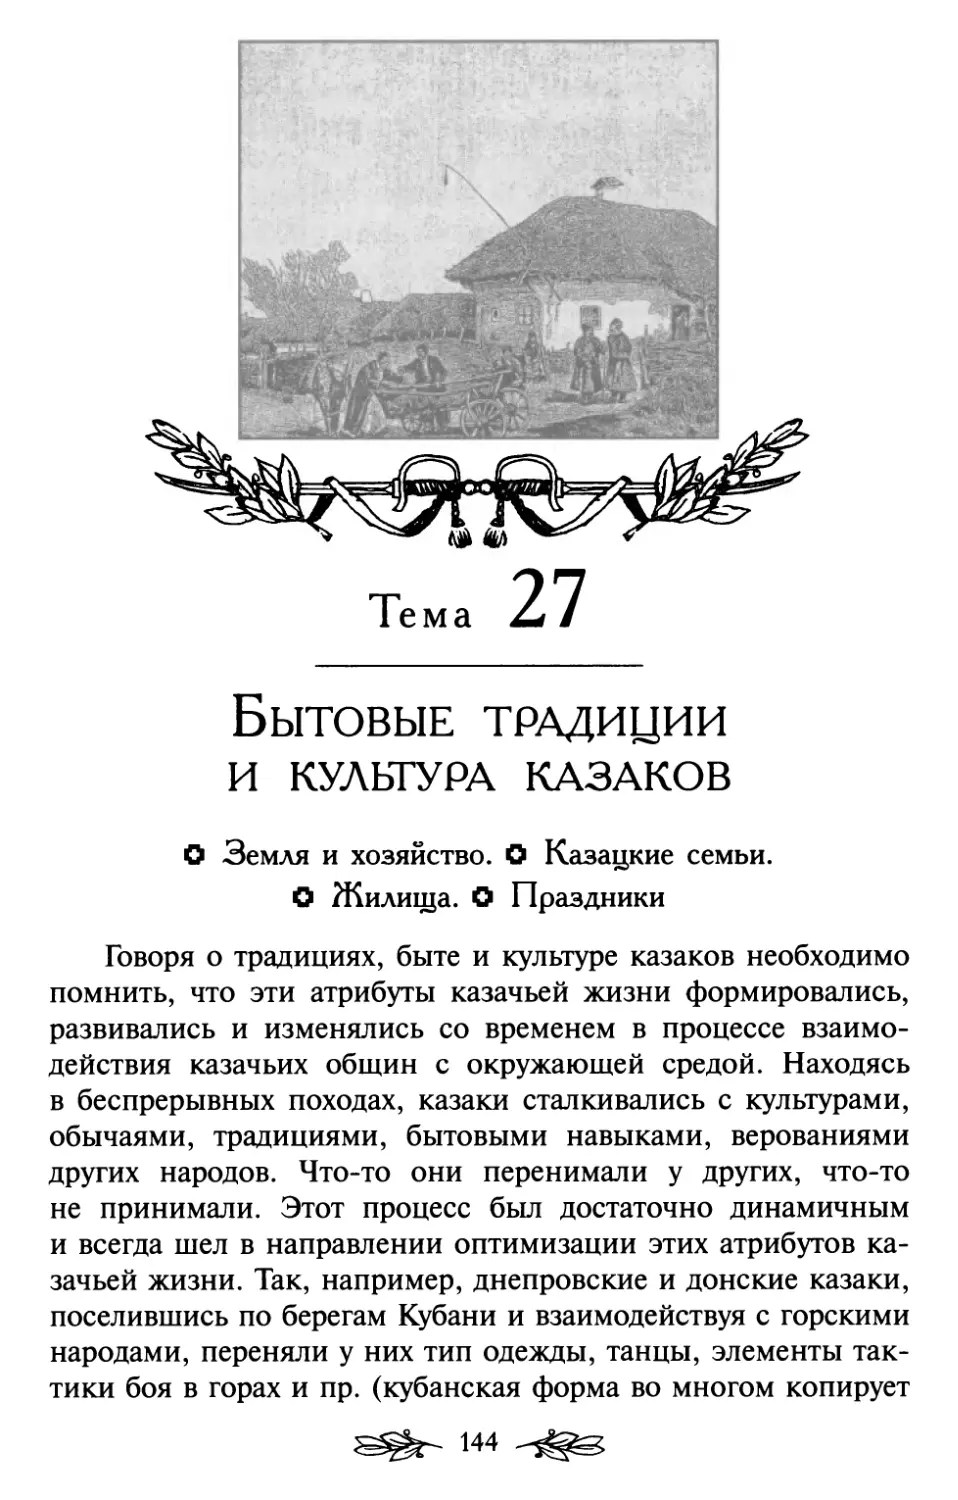 Тема 27. Бытовые традиции и культура казаков